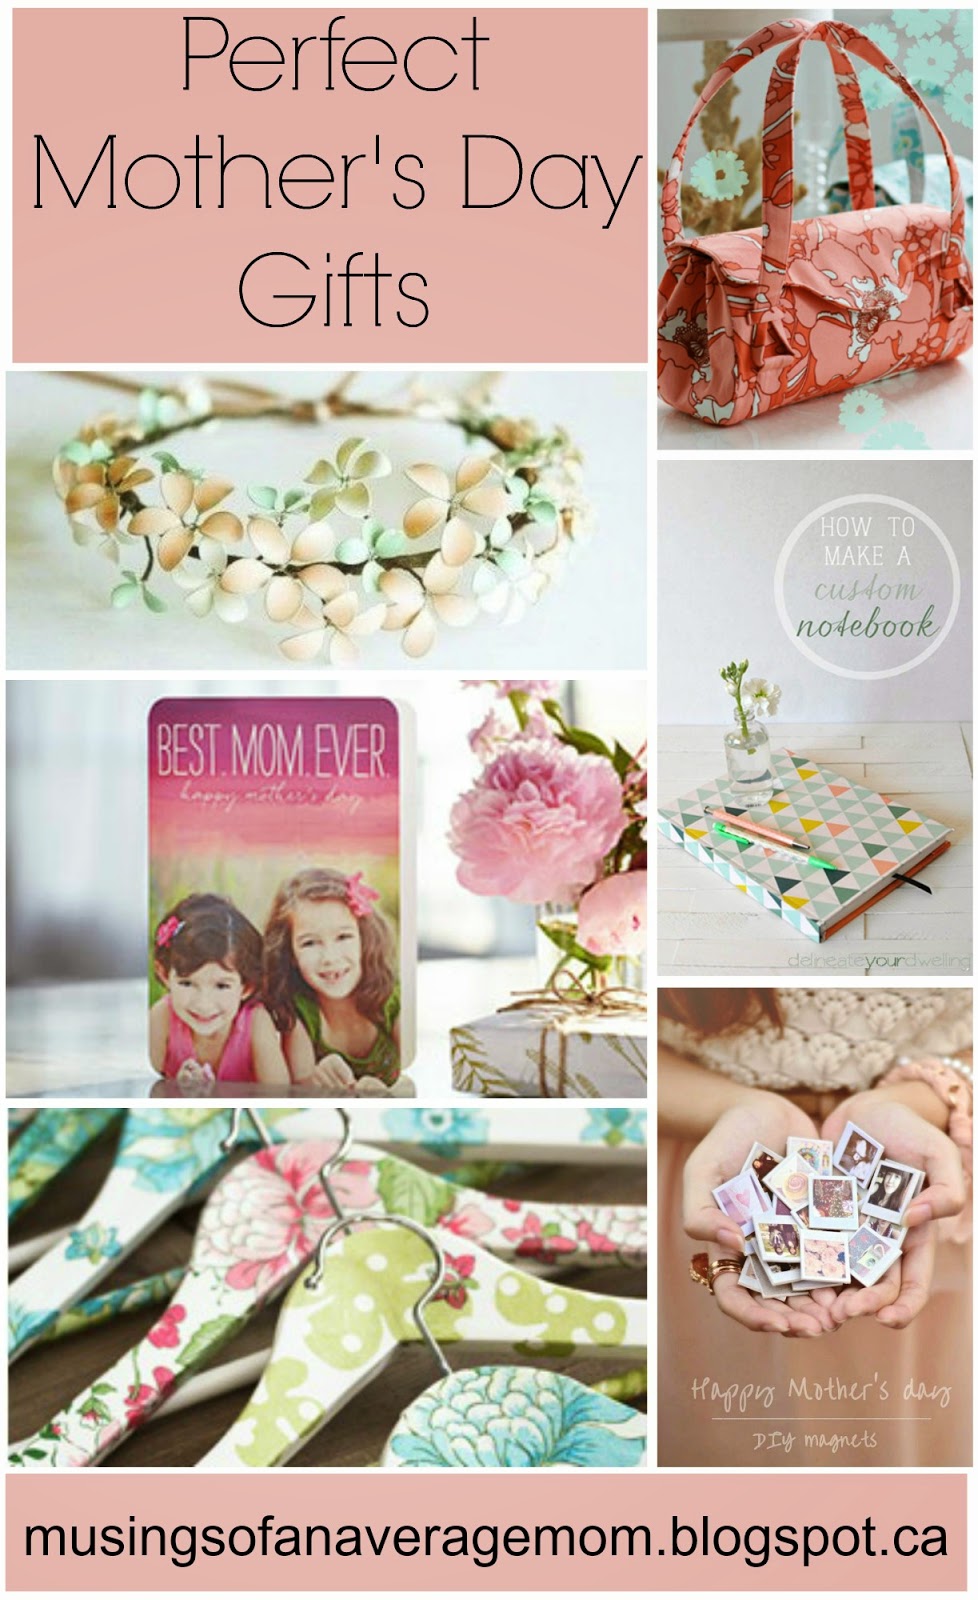 http://musingsofanaveragemom.blogspot.ca/2015/04/mothers-day-gift-ideas.html